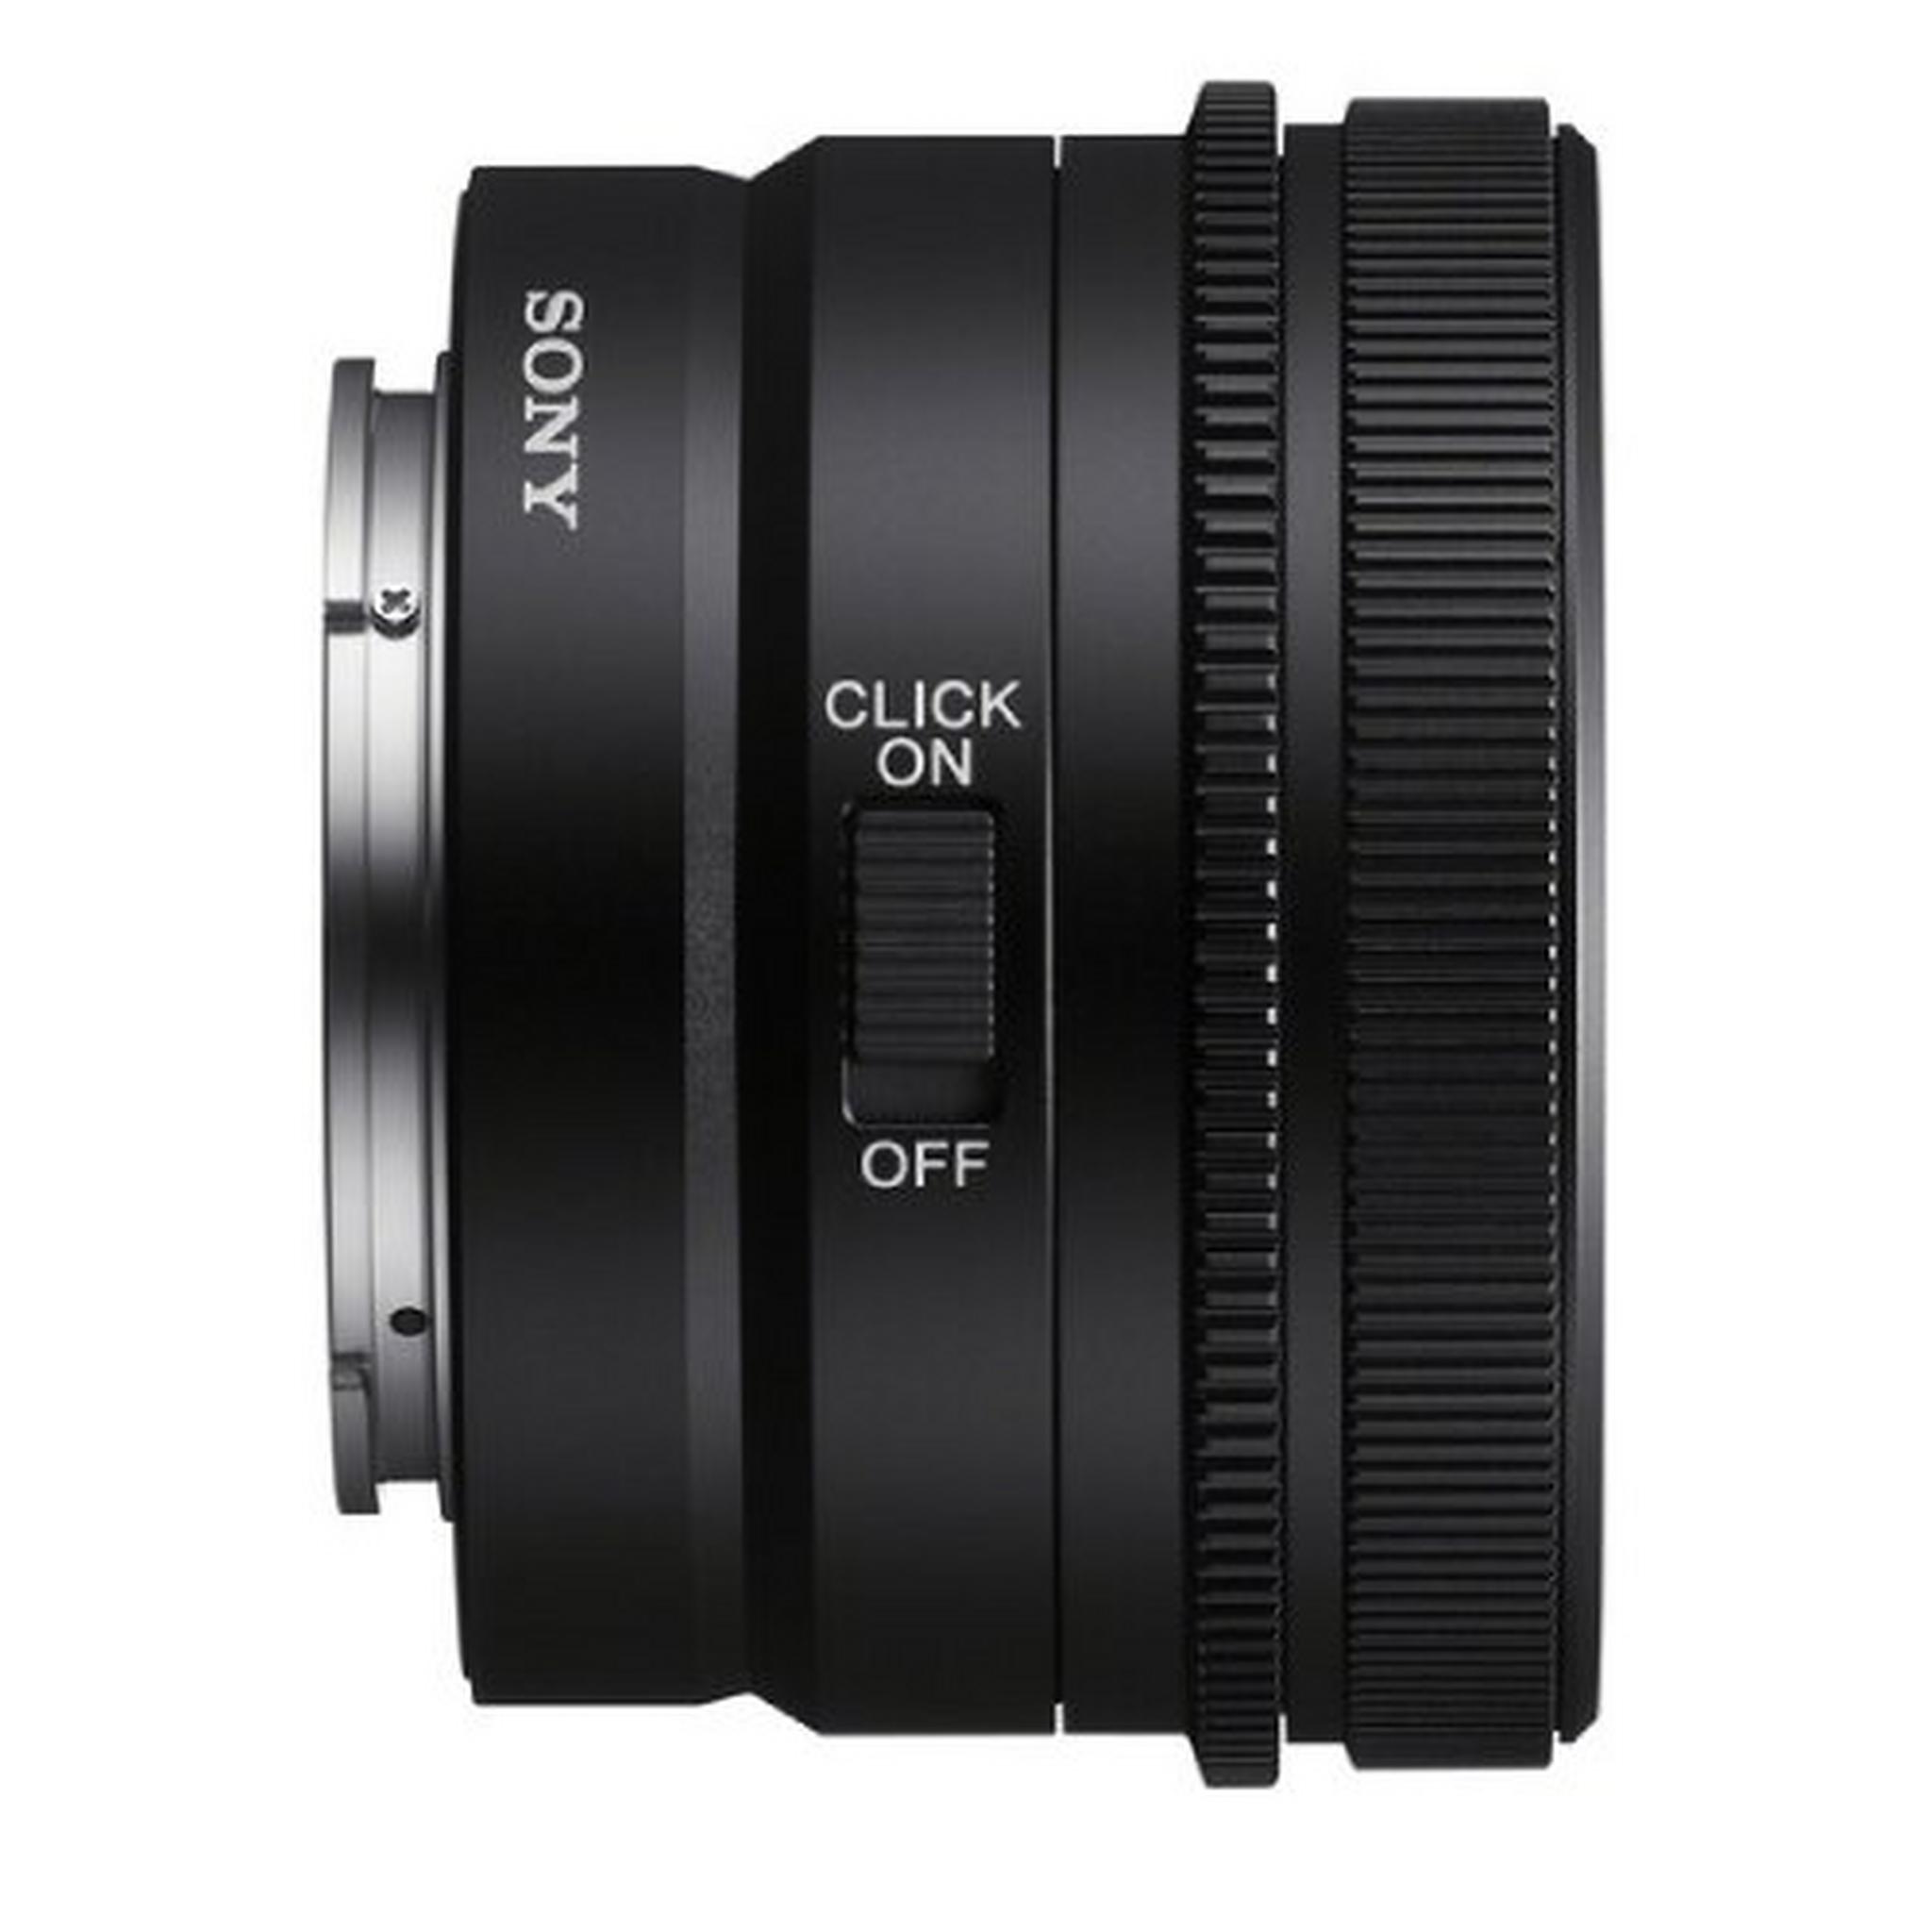 Sony FE 24mm F2.8 G Lens (SEL24F28G)